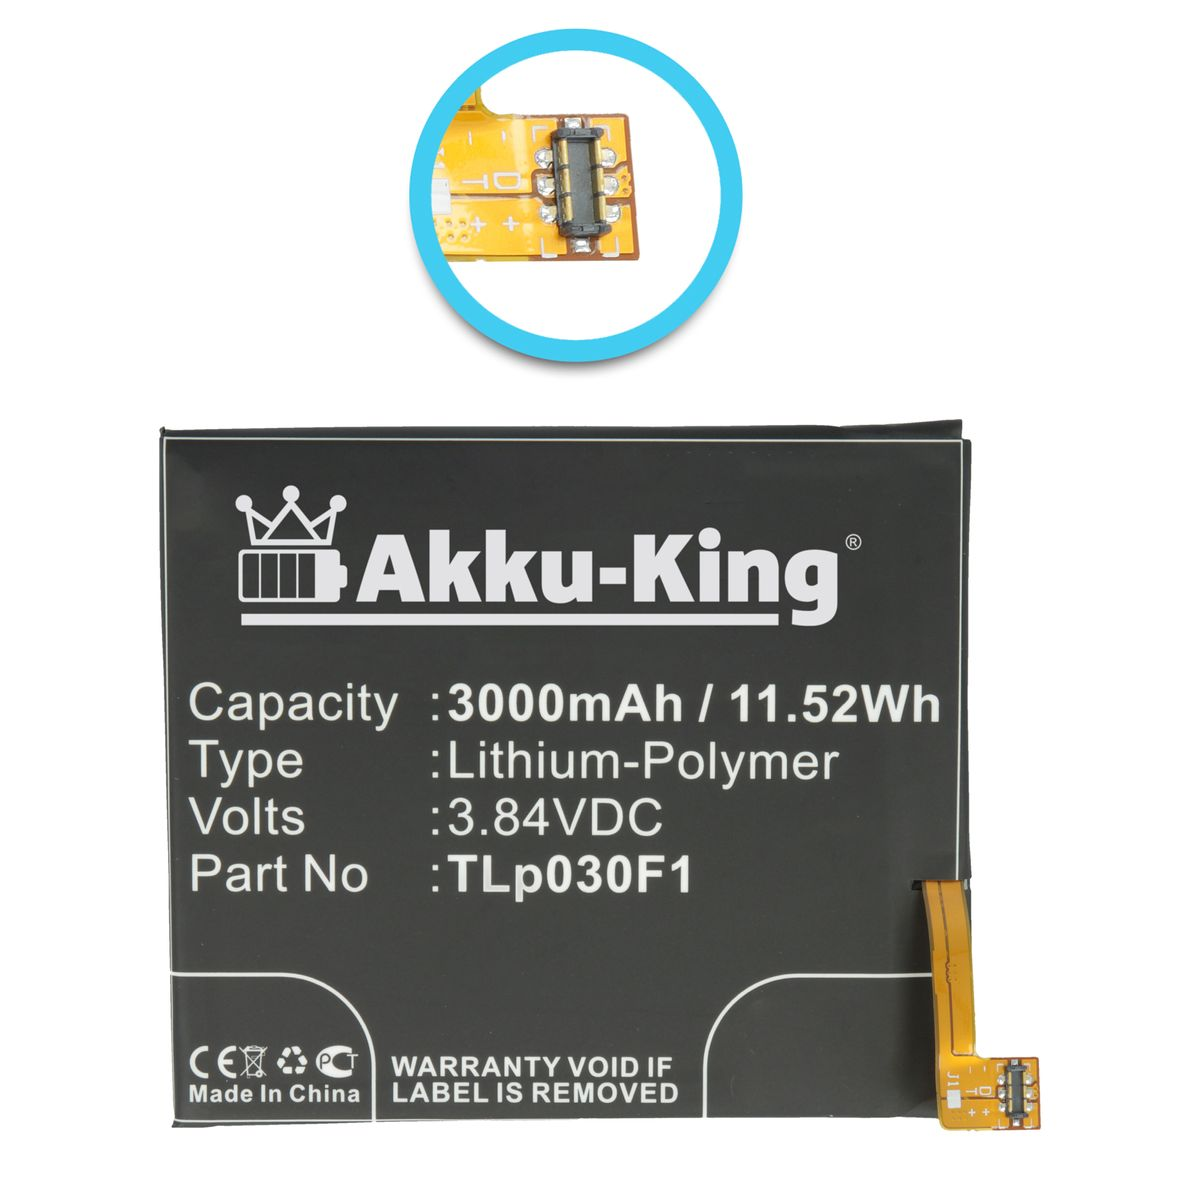 AKKU-KING Akku Li-Polymer Alcatel Tlp030F1 Volt, 3.84 3000mAh für Handy-Akku